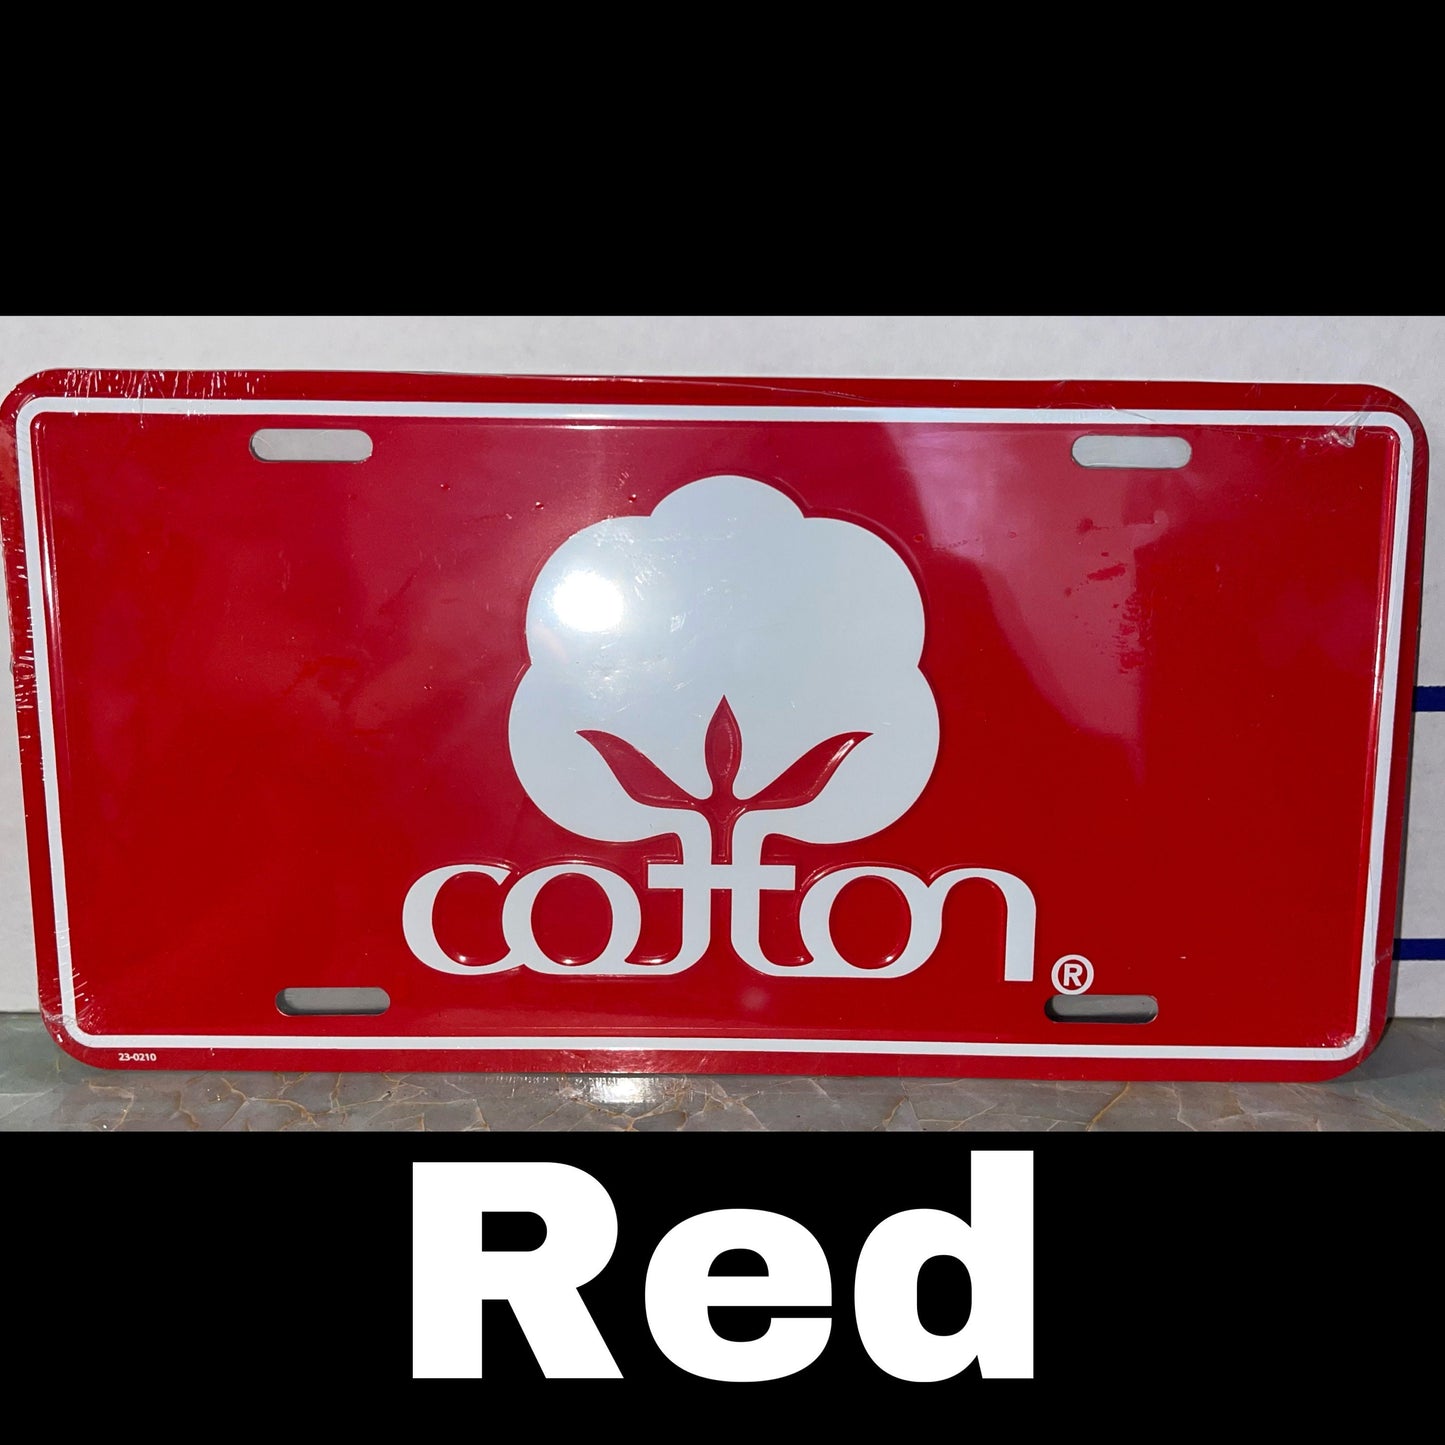 Cotton License Plate